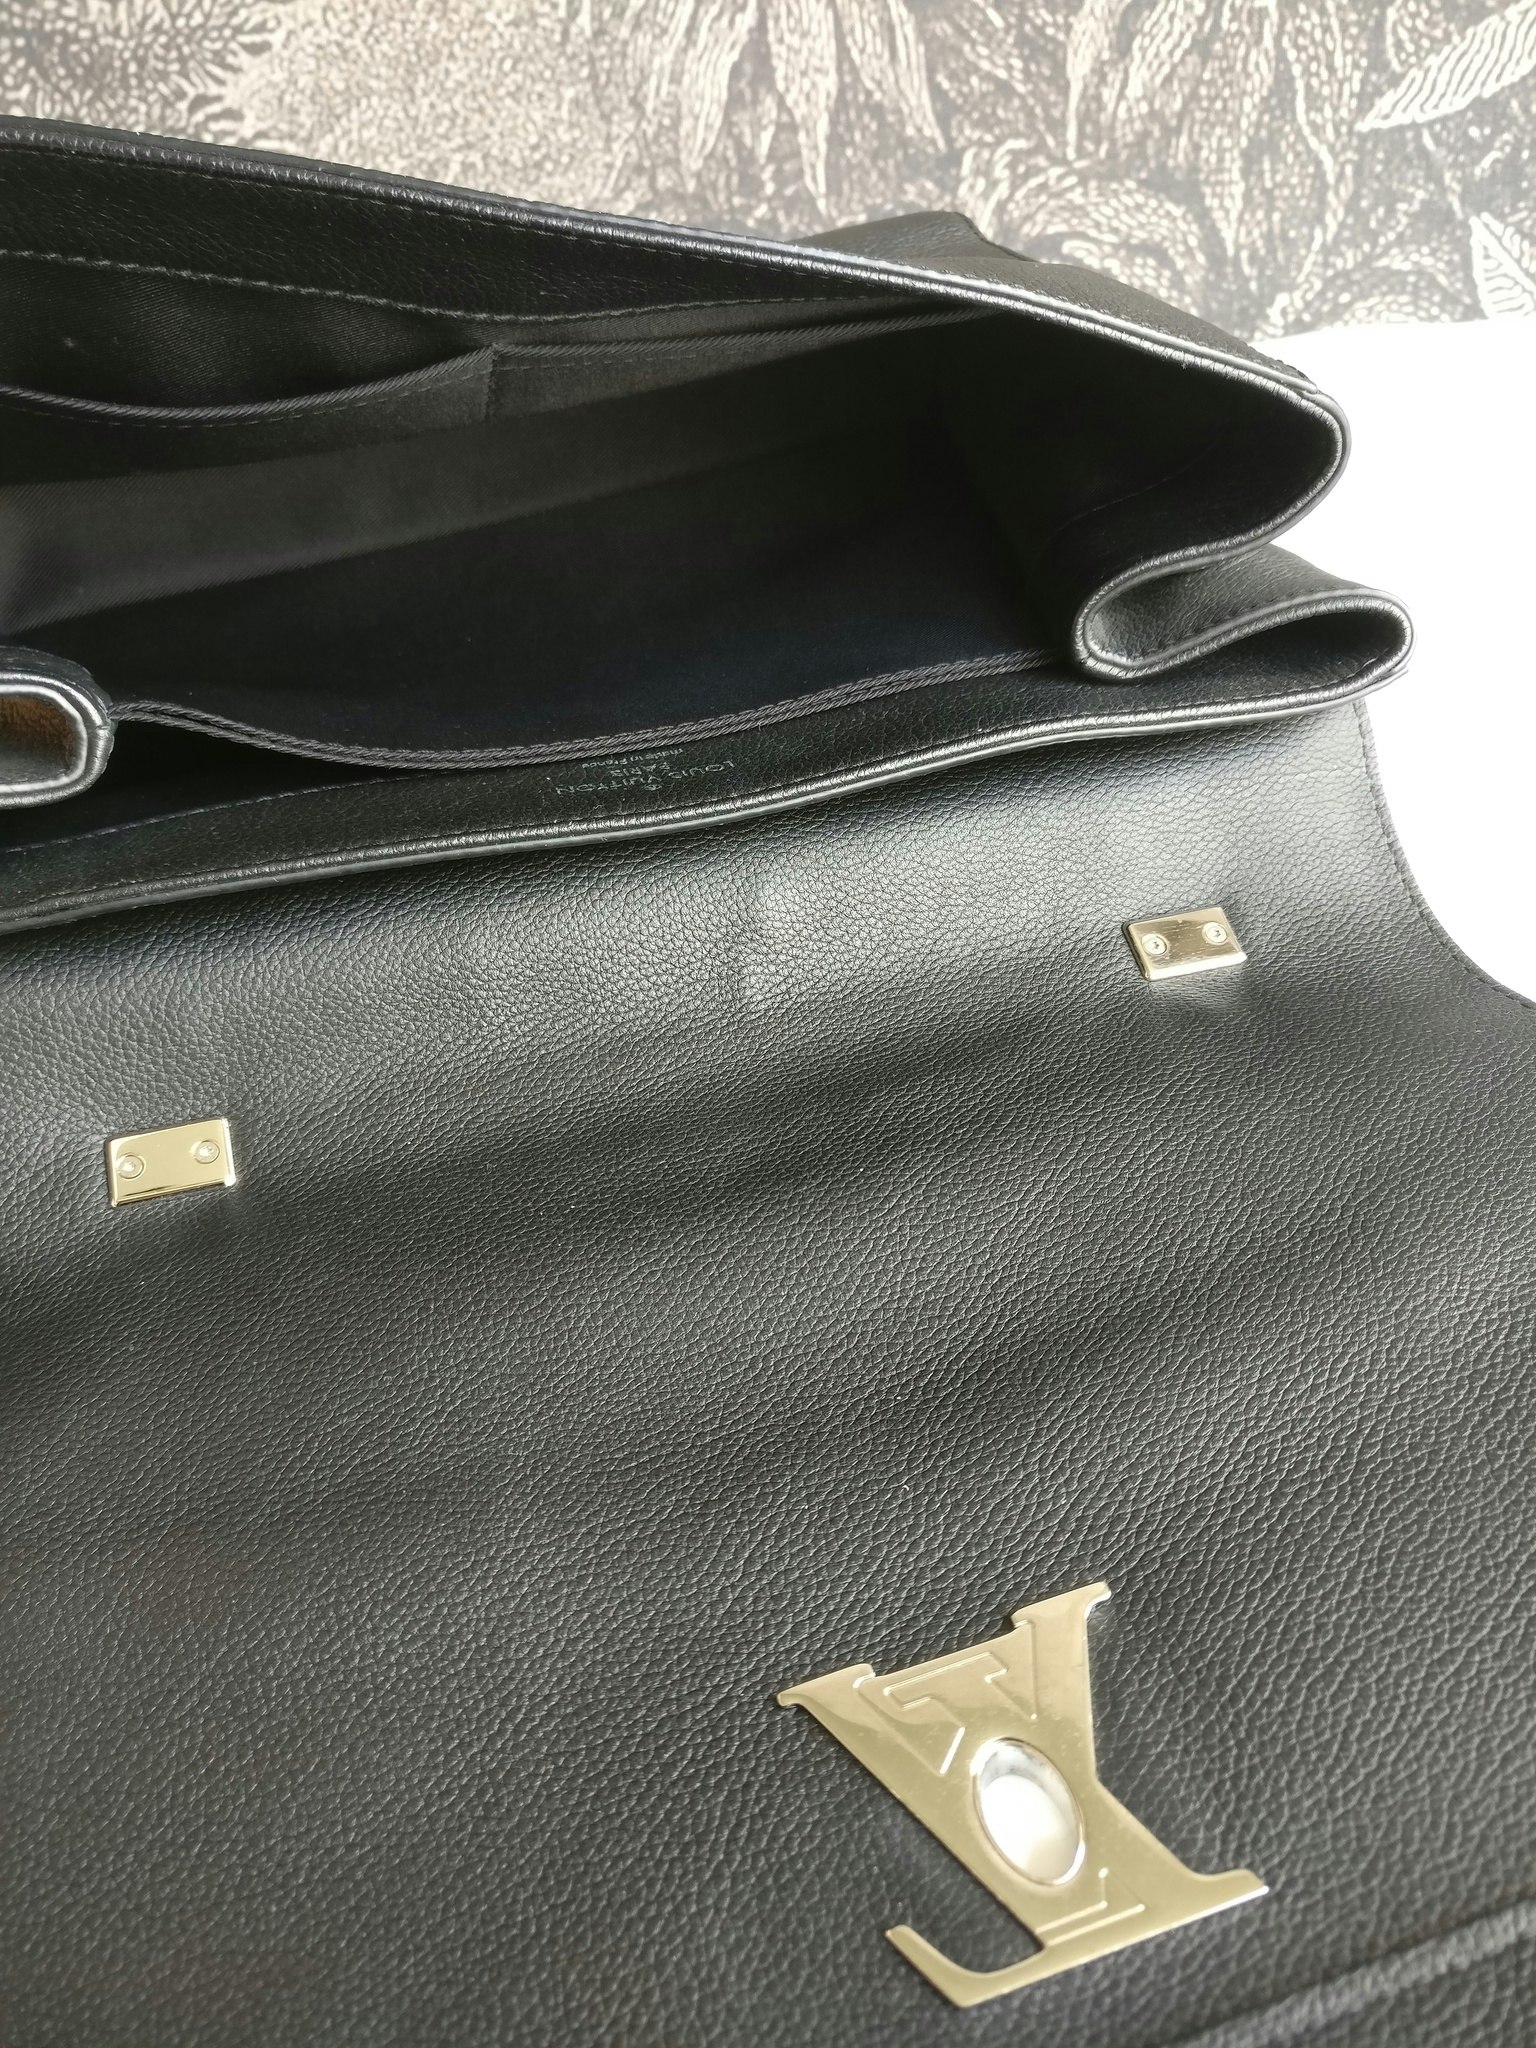 Louis Vuitton, Bags, Authentic Louis Vuitton Lockme Ii Noir Brand New